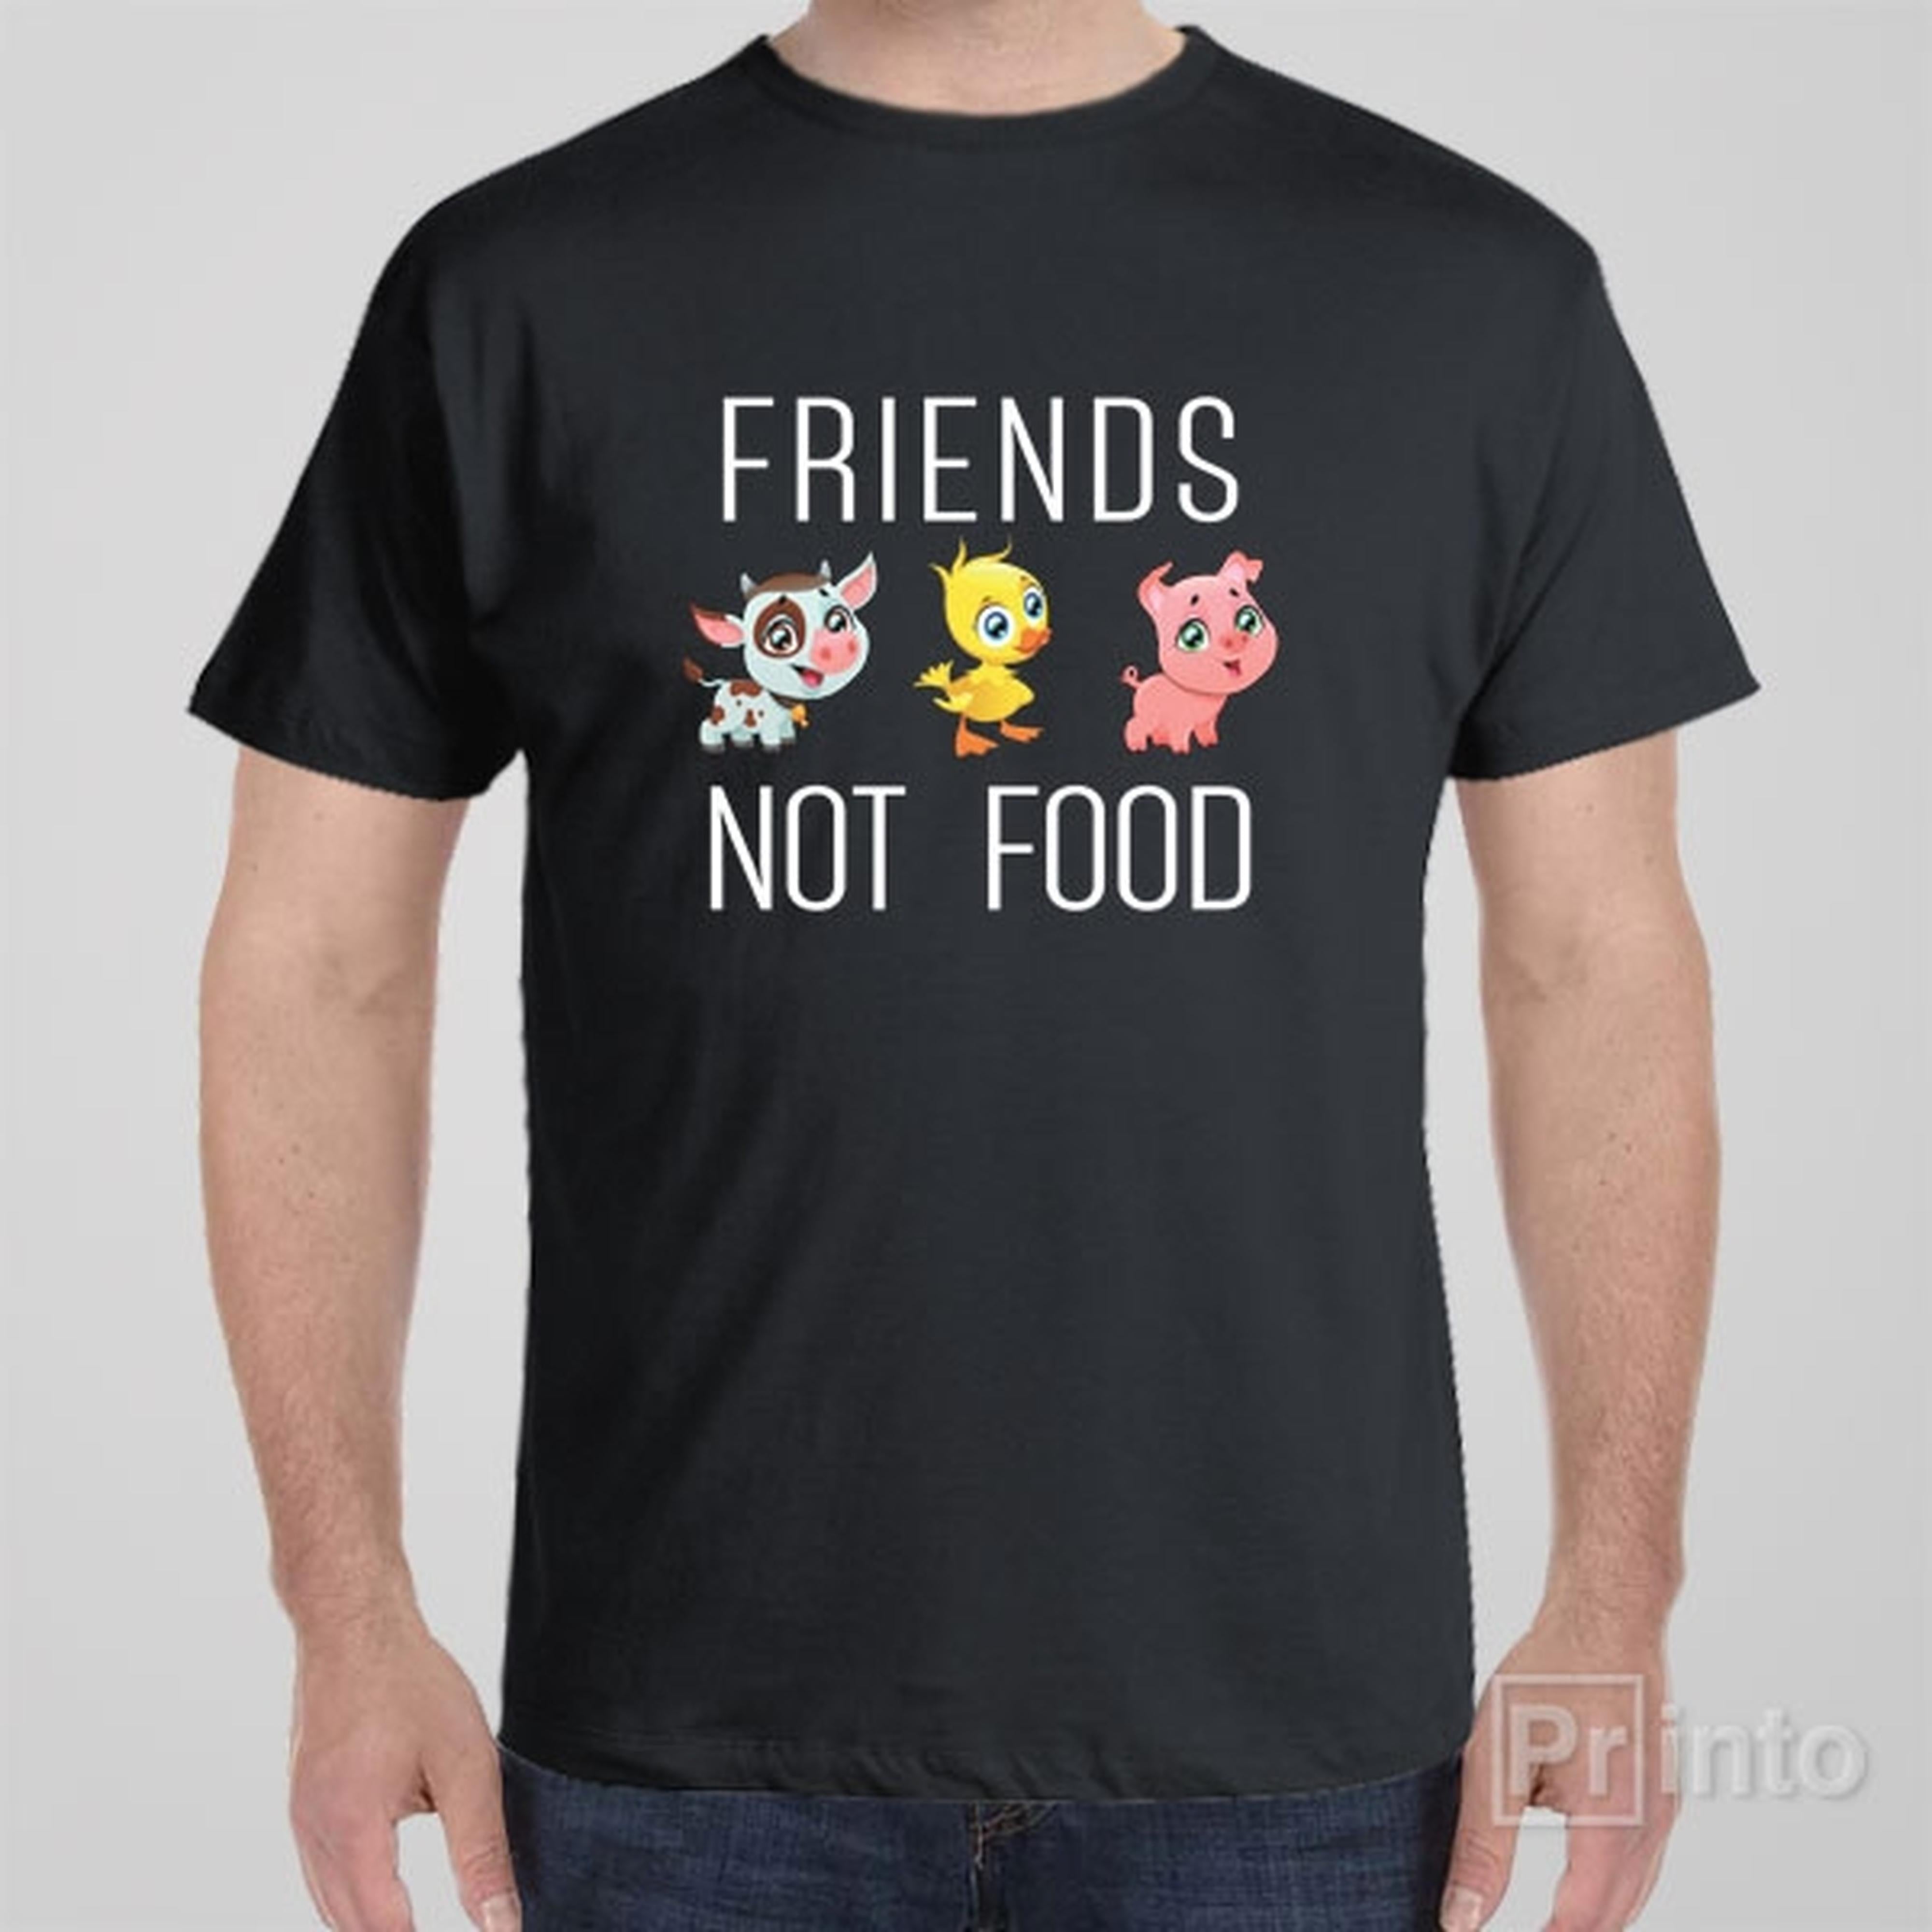 friends-not-food-t-shirt